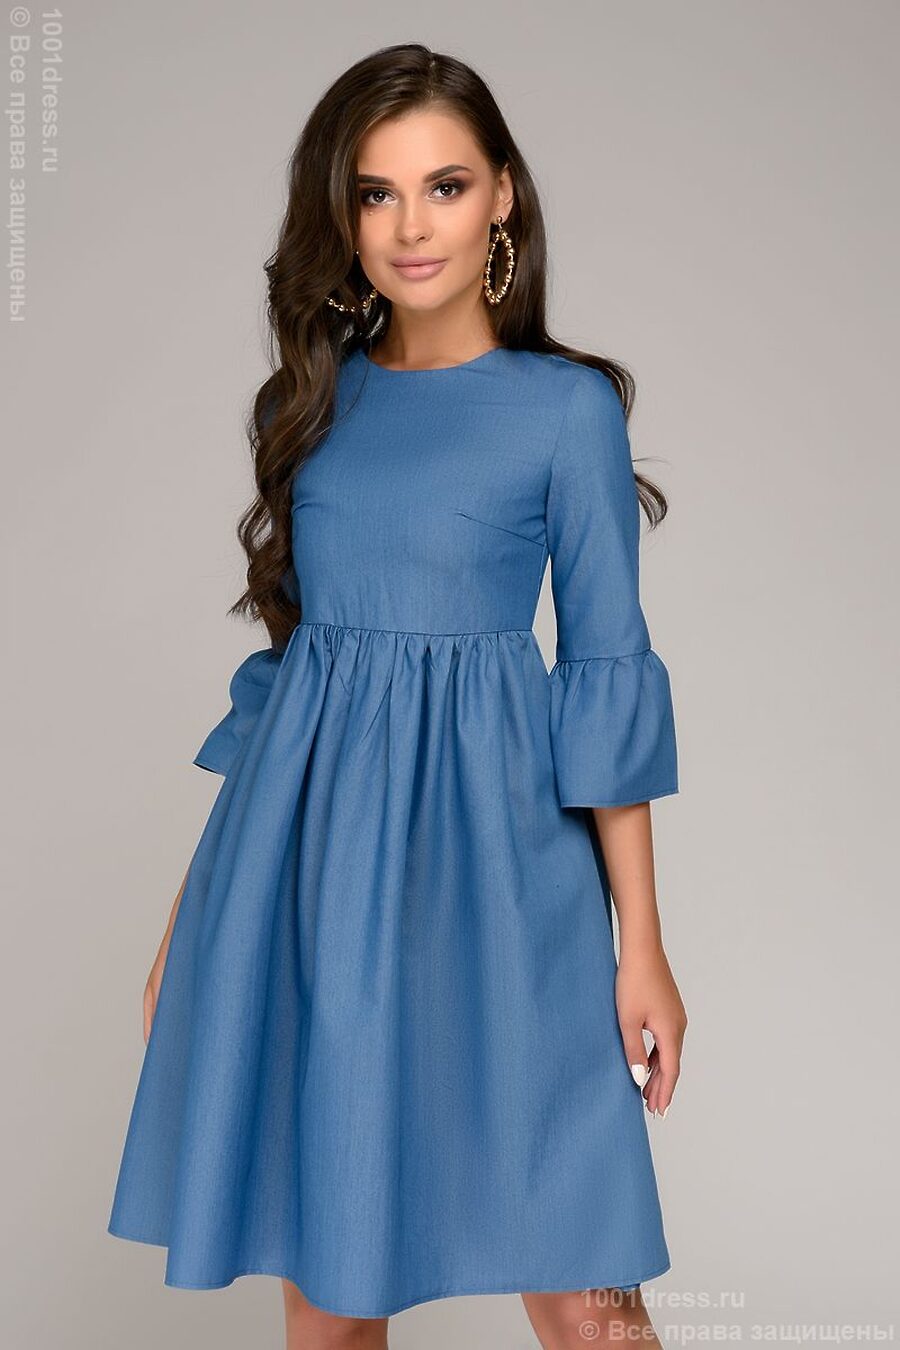 Платье для женщин 1001 DRESS 775856 купить оптом от производителя. Совместная покупка женской одежды в OptMoyo